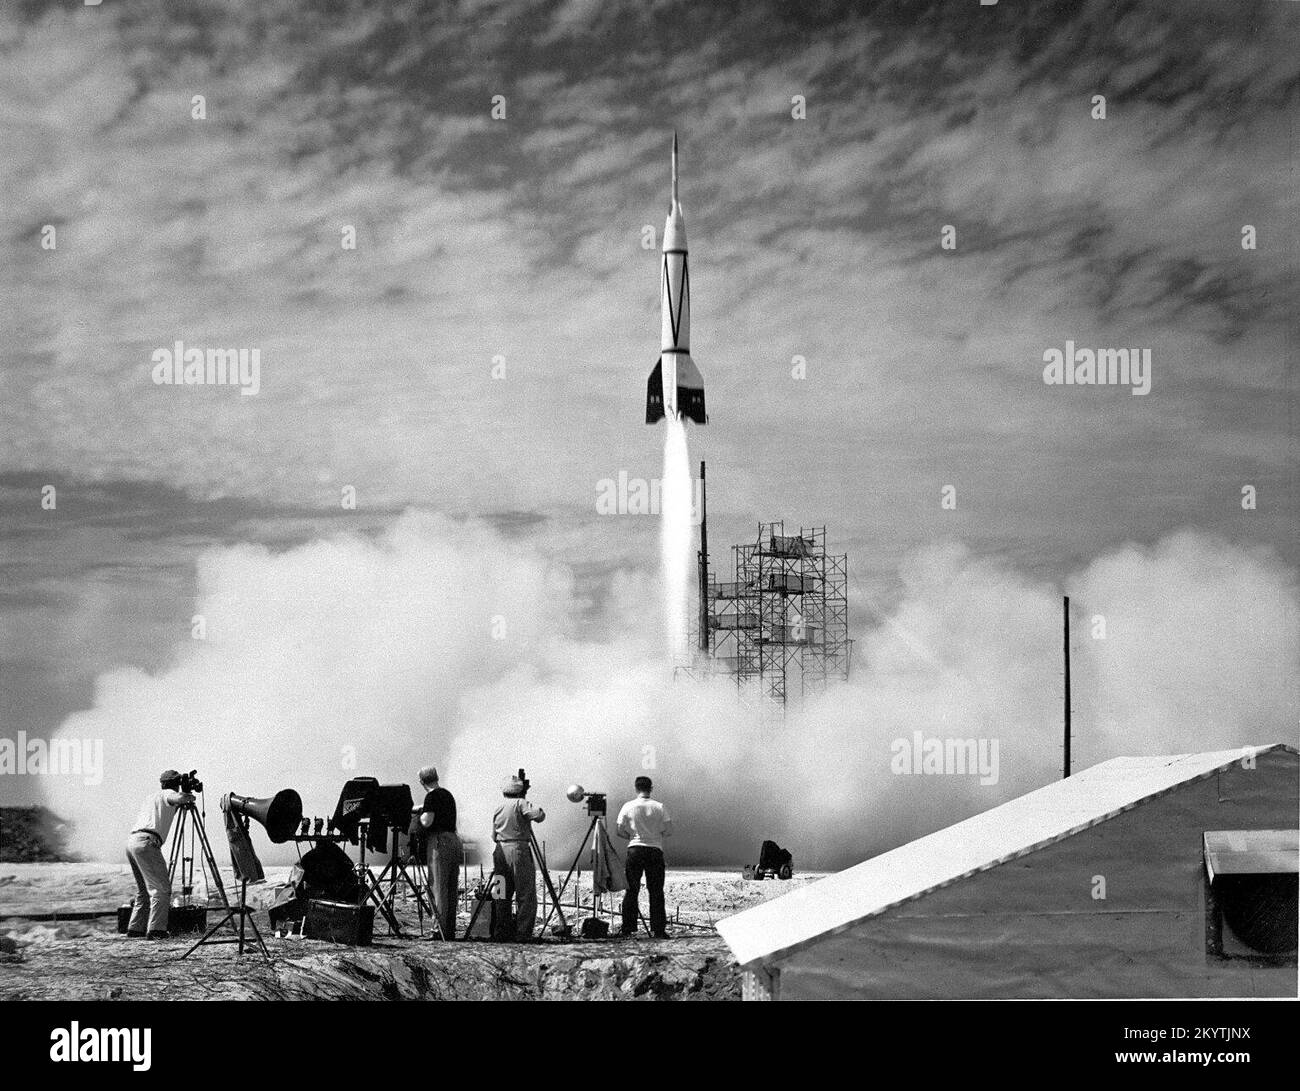 Bumper V-2 Start (24. Juli 1950) Ein neues Kapitel der Raumfahrt begann im Juli 1950 mit dem Start der ersten Rakete aus Cape Canaveral, Florida: Der Bumper 8. Wie oben gezeigt, war Bumper 8 ein ehrgeiziges zweistufiges Raketenprogramm, das eine V-2-Raketenbasis mit einer WAC-Korporalrakete überragte. Die obere Bühne erreichte damals Rekordhöhen von fast 400 Kilometern, höher als selbst moderne Space Shuttles heute fliegen. Bumper 8 wurde unter der Leitung der General Electric Company ins Leben gerufen und wurde in erster Linie für die Erprobung von Raketensystemen und für die Erforschung der oberen Atmosphäre verwendet. Stoßfängerraketen transportiert Stockfoto